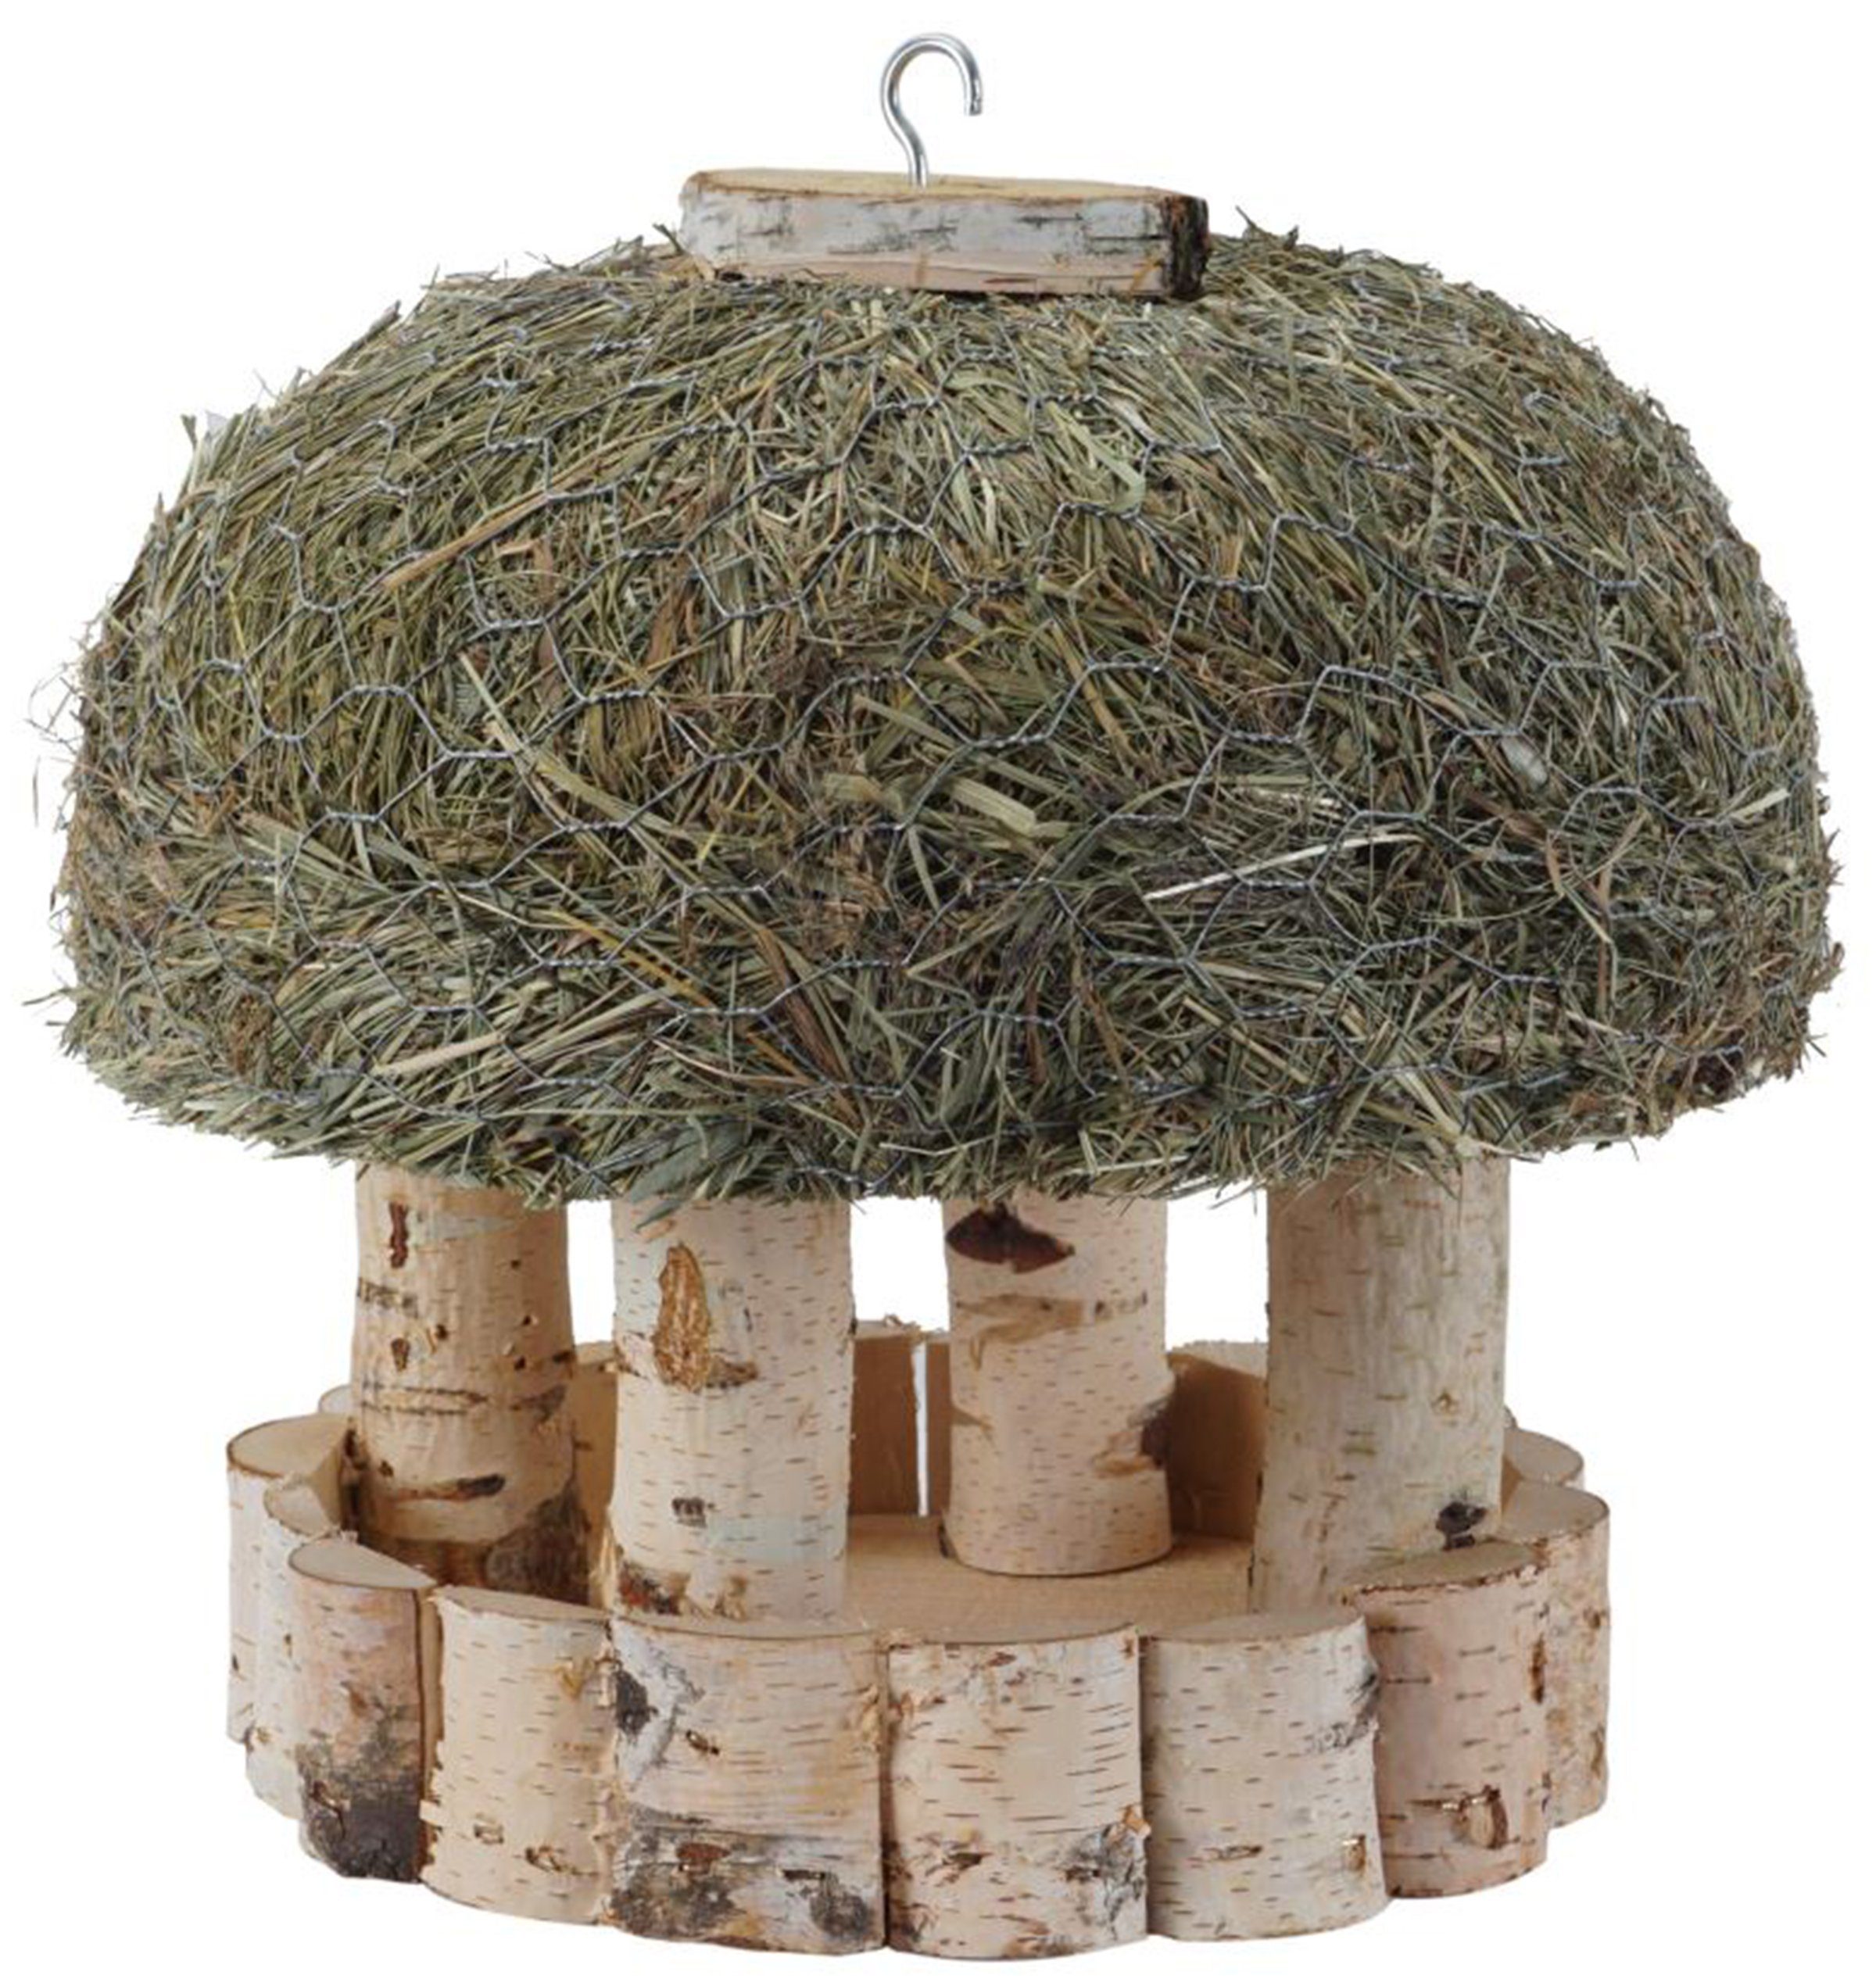 Dehner Futterhaus Vogelhaus mit Heudach, Birkenholz/Heu, ca. Ø 29 cm, Schutz und Futterstelle für Vögel im Garten, natürliches Material